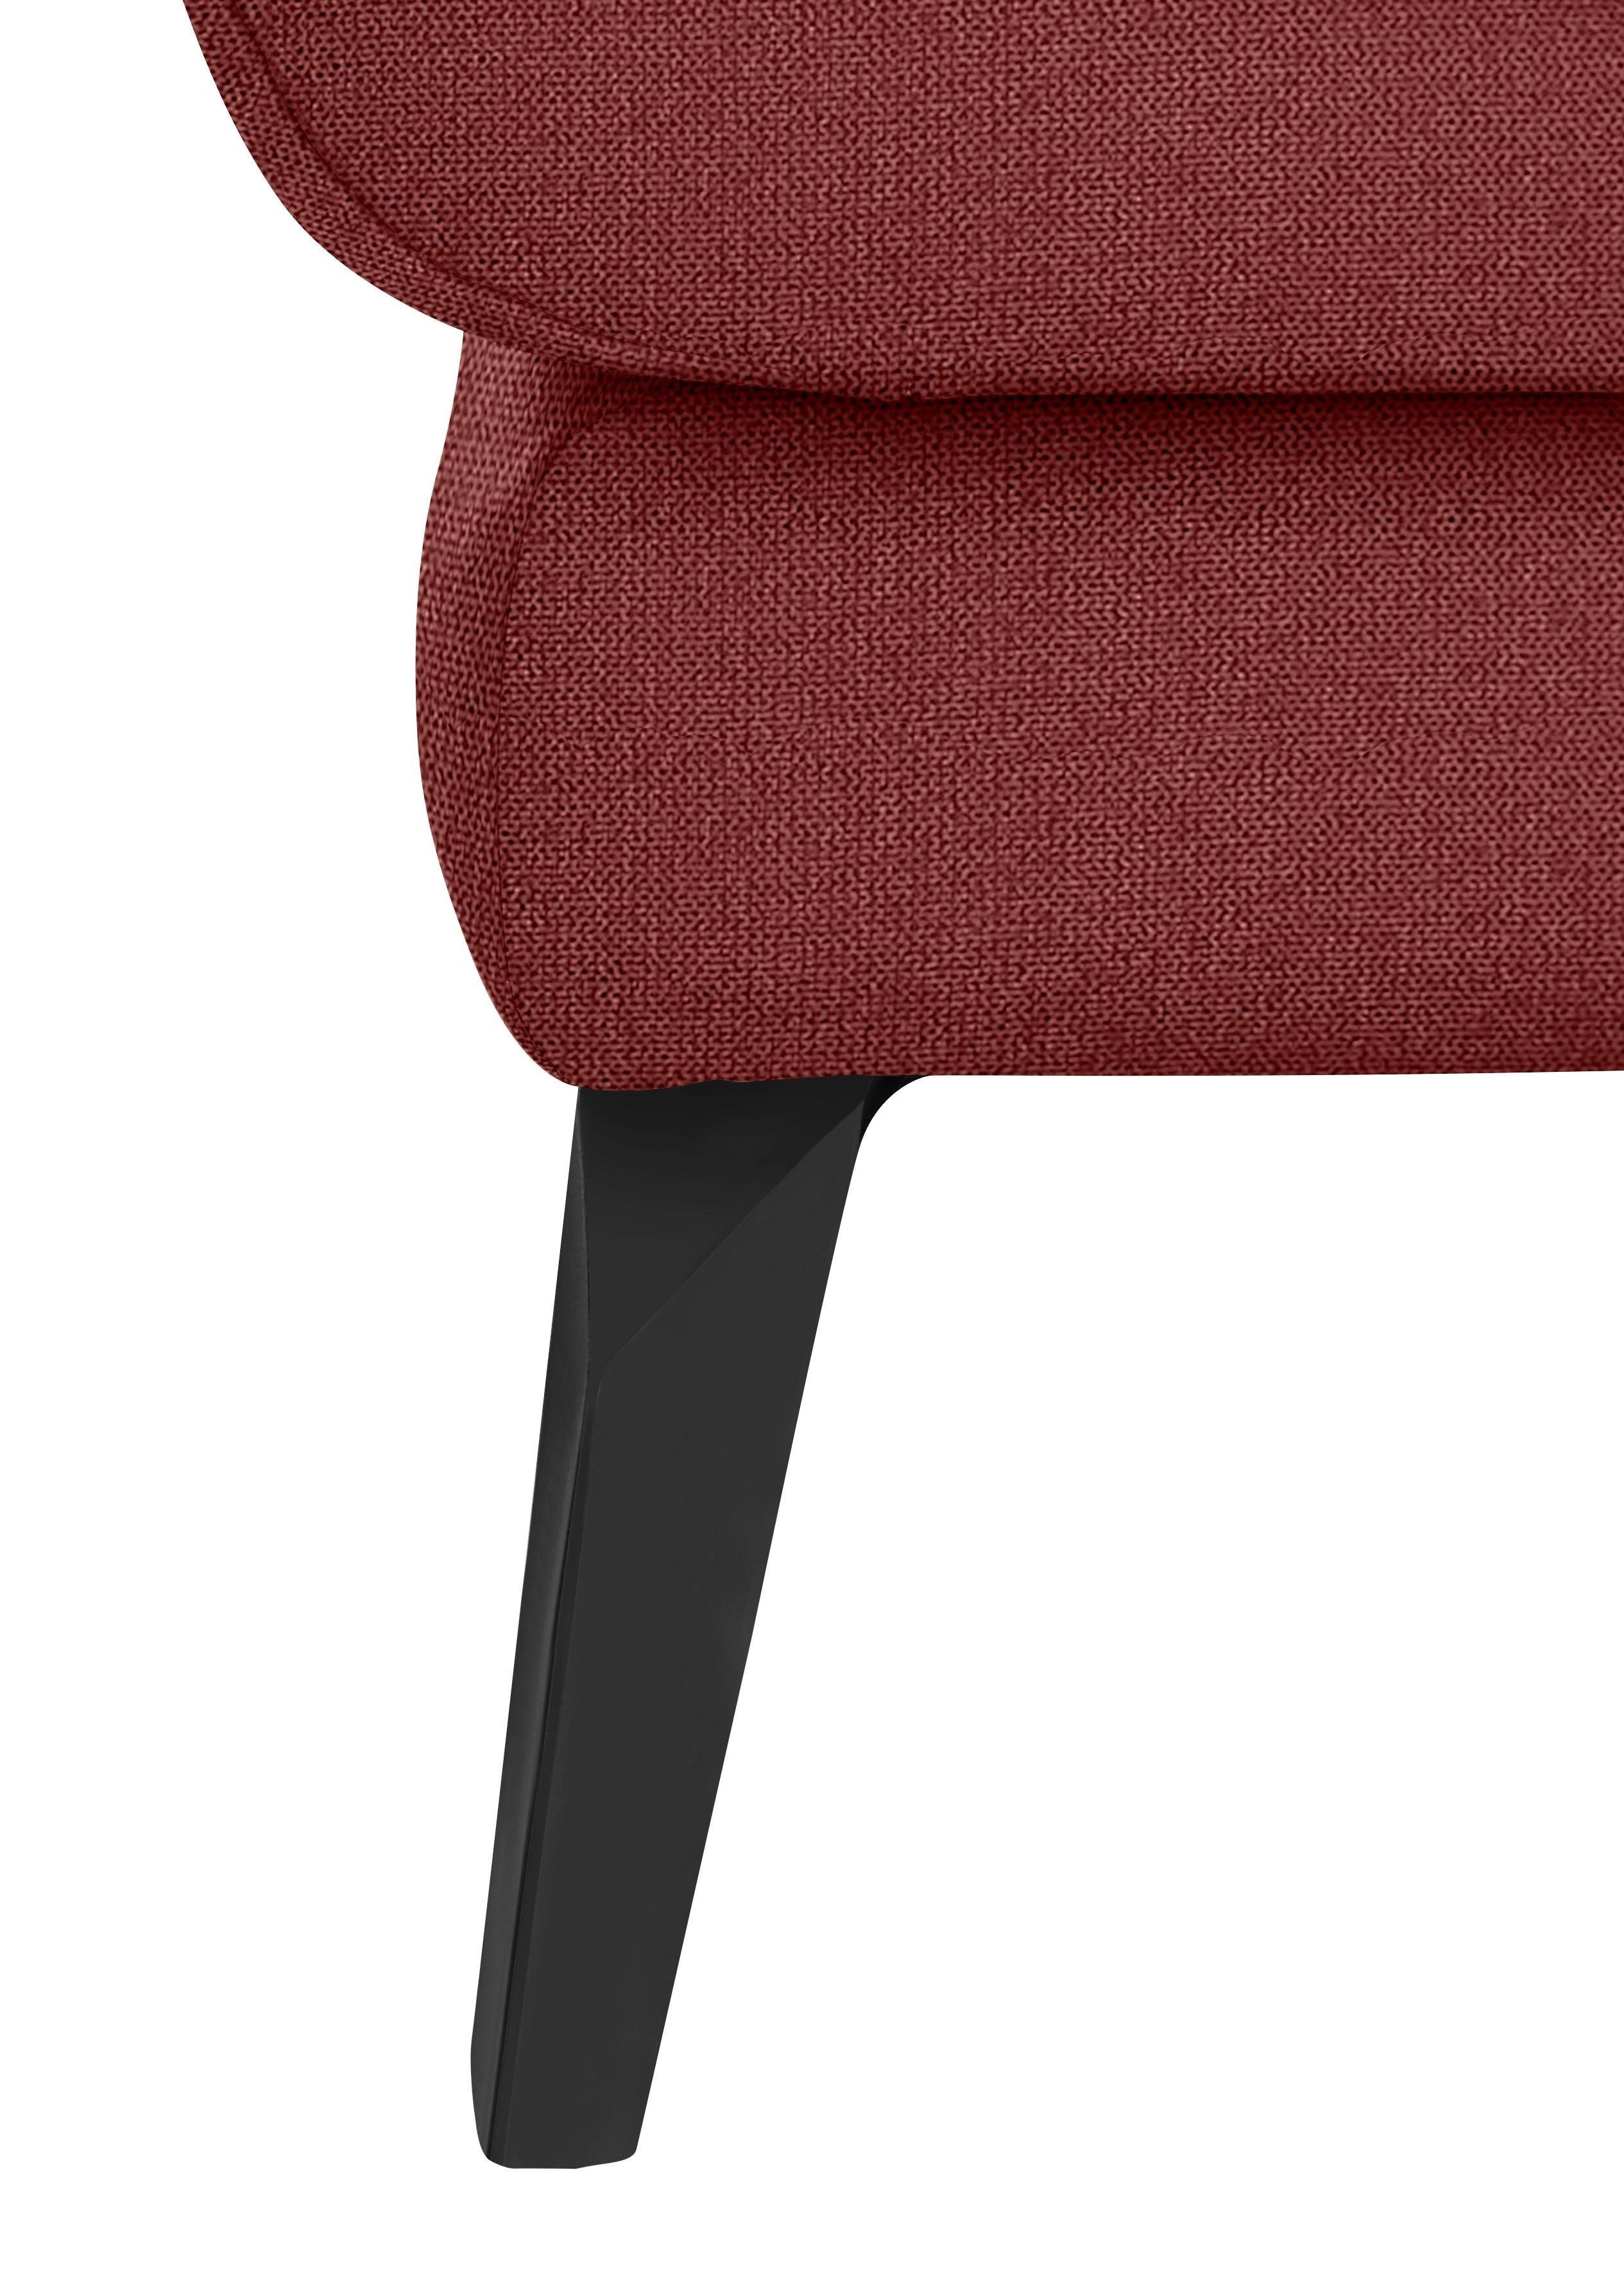 schwarz Sitz, Chaiselongue pulverbeschichtet dekorativer im W.SCHILLIG softy, Heftung Füße mit